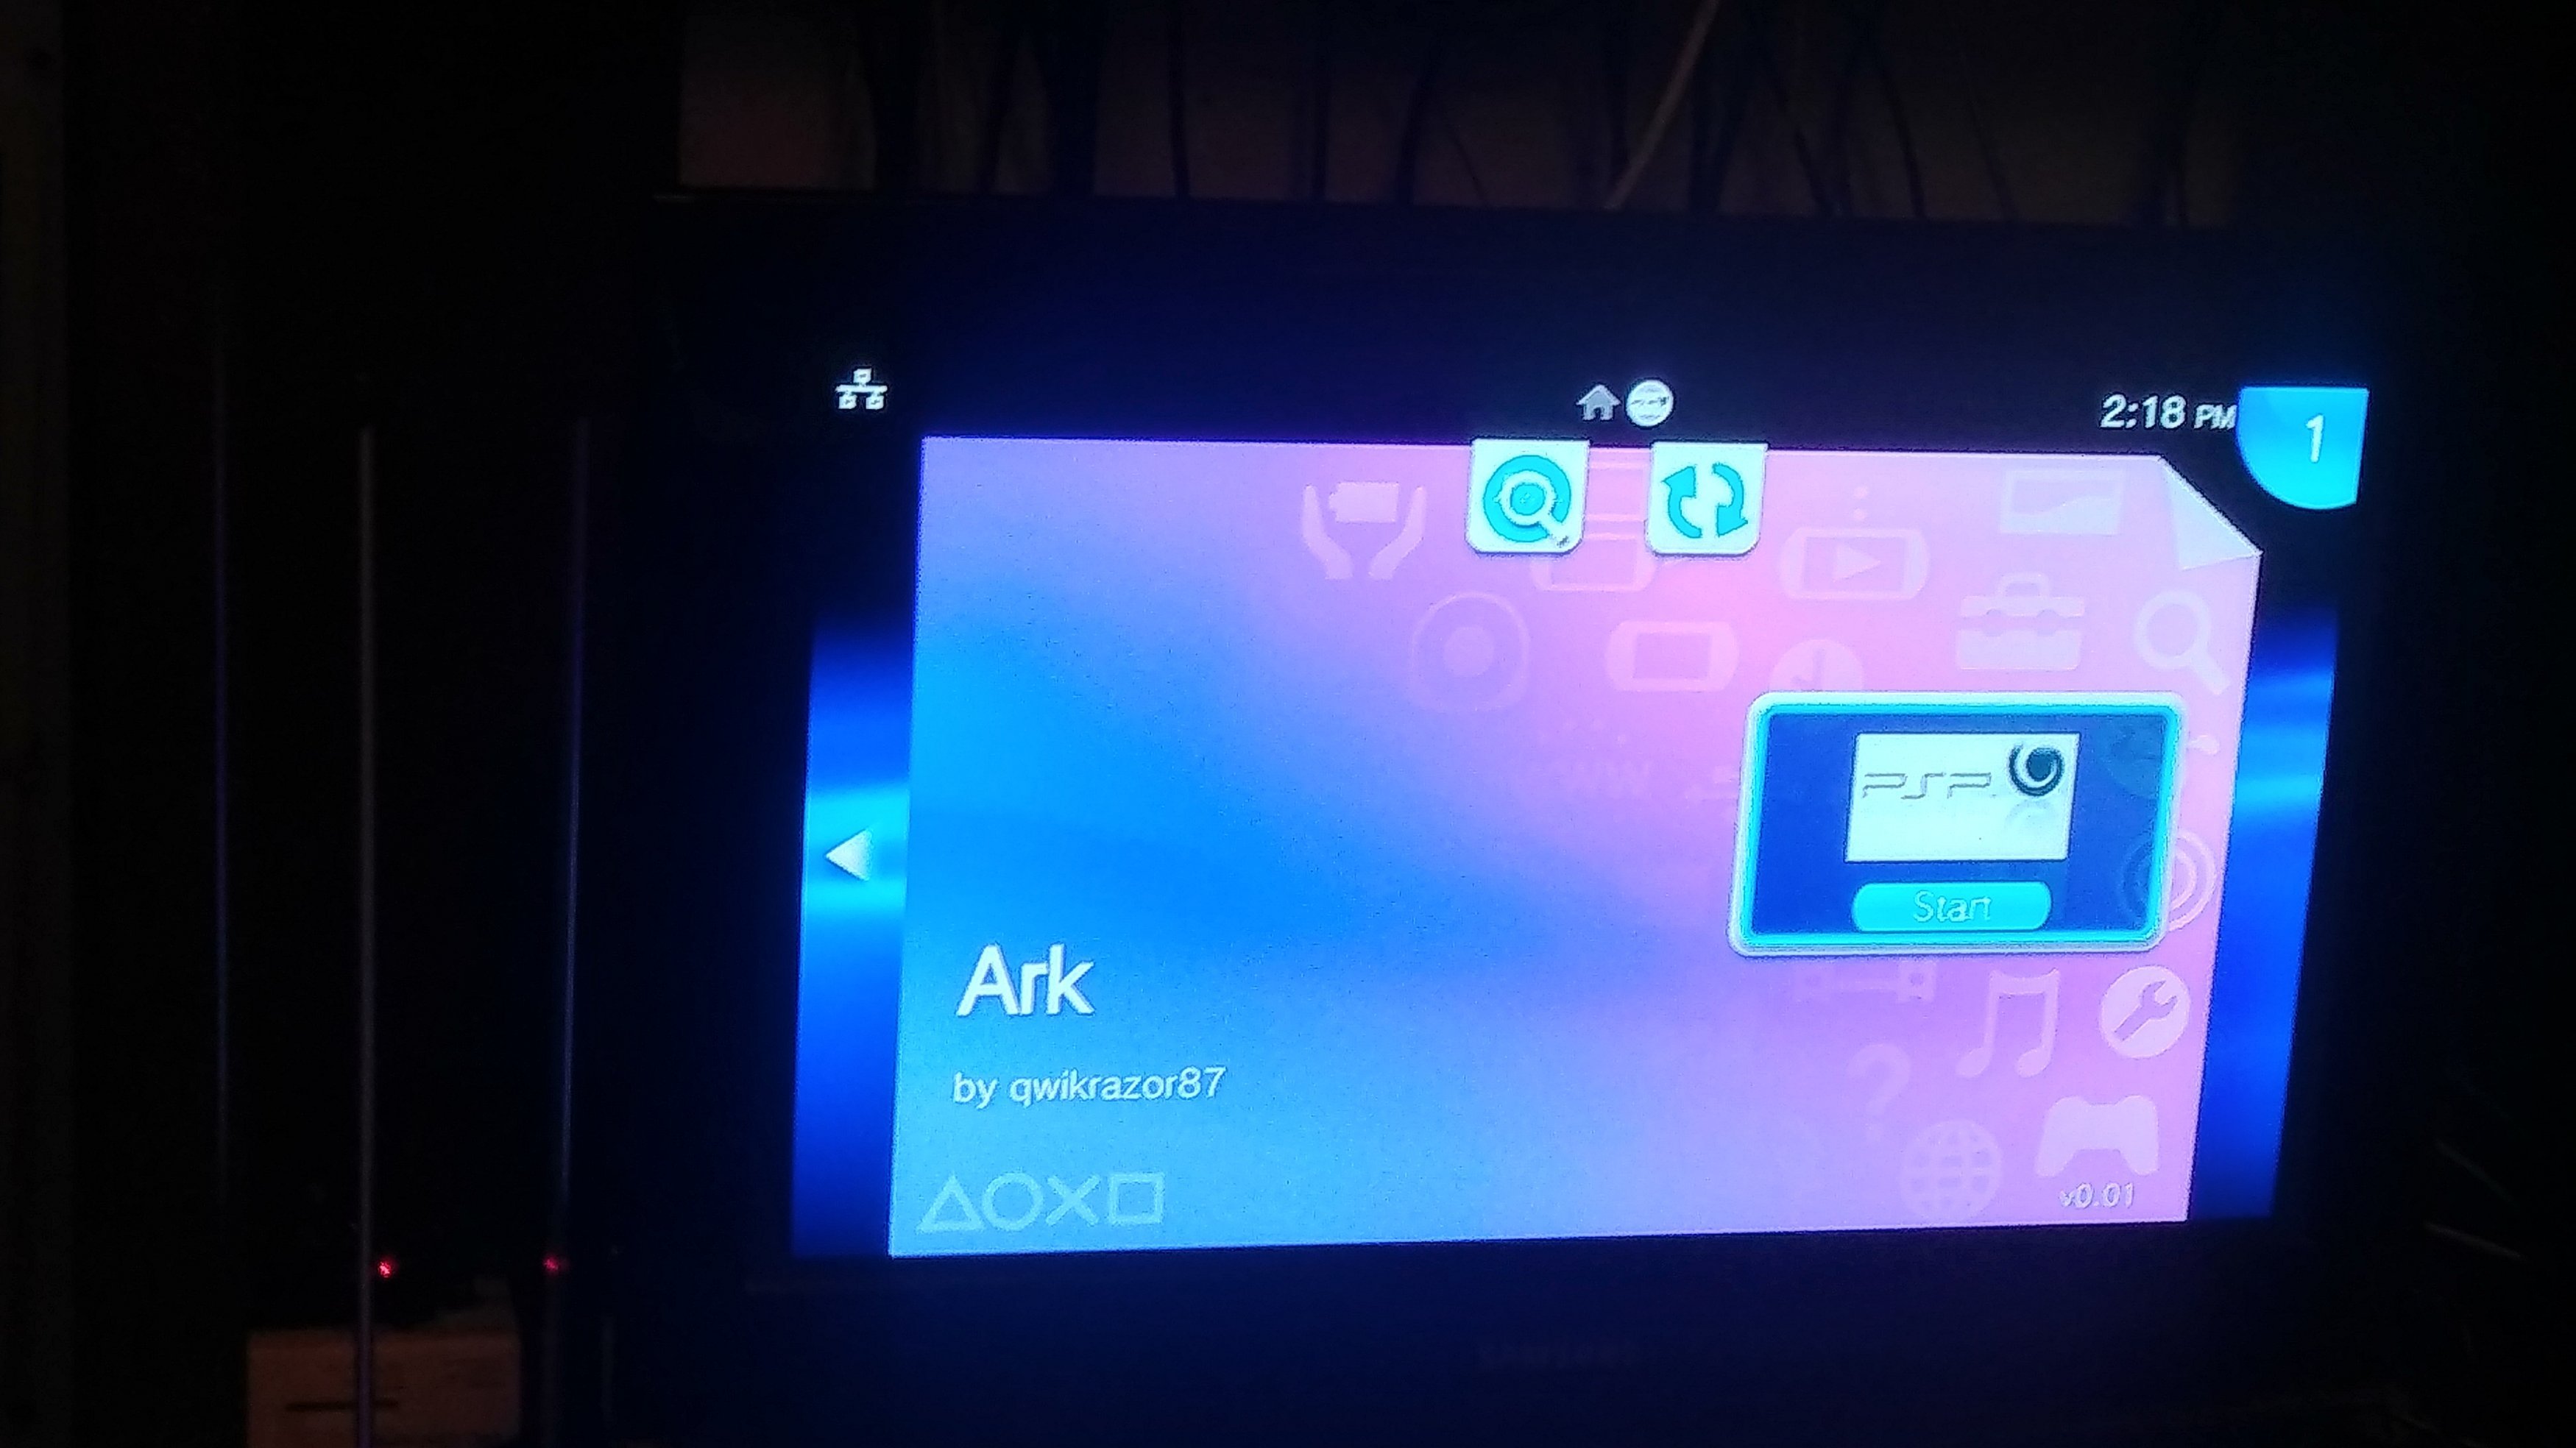 PSP / PSP Go / PS Vita] Ark-4 CFW 4.19.8 – NewsInside